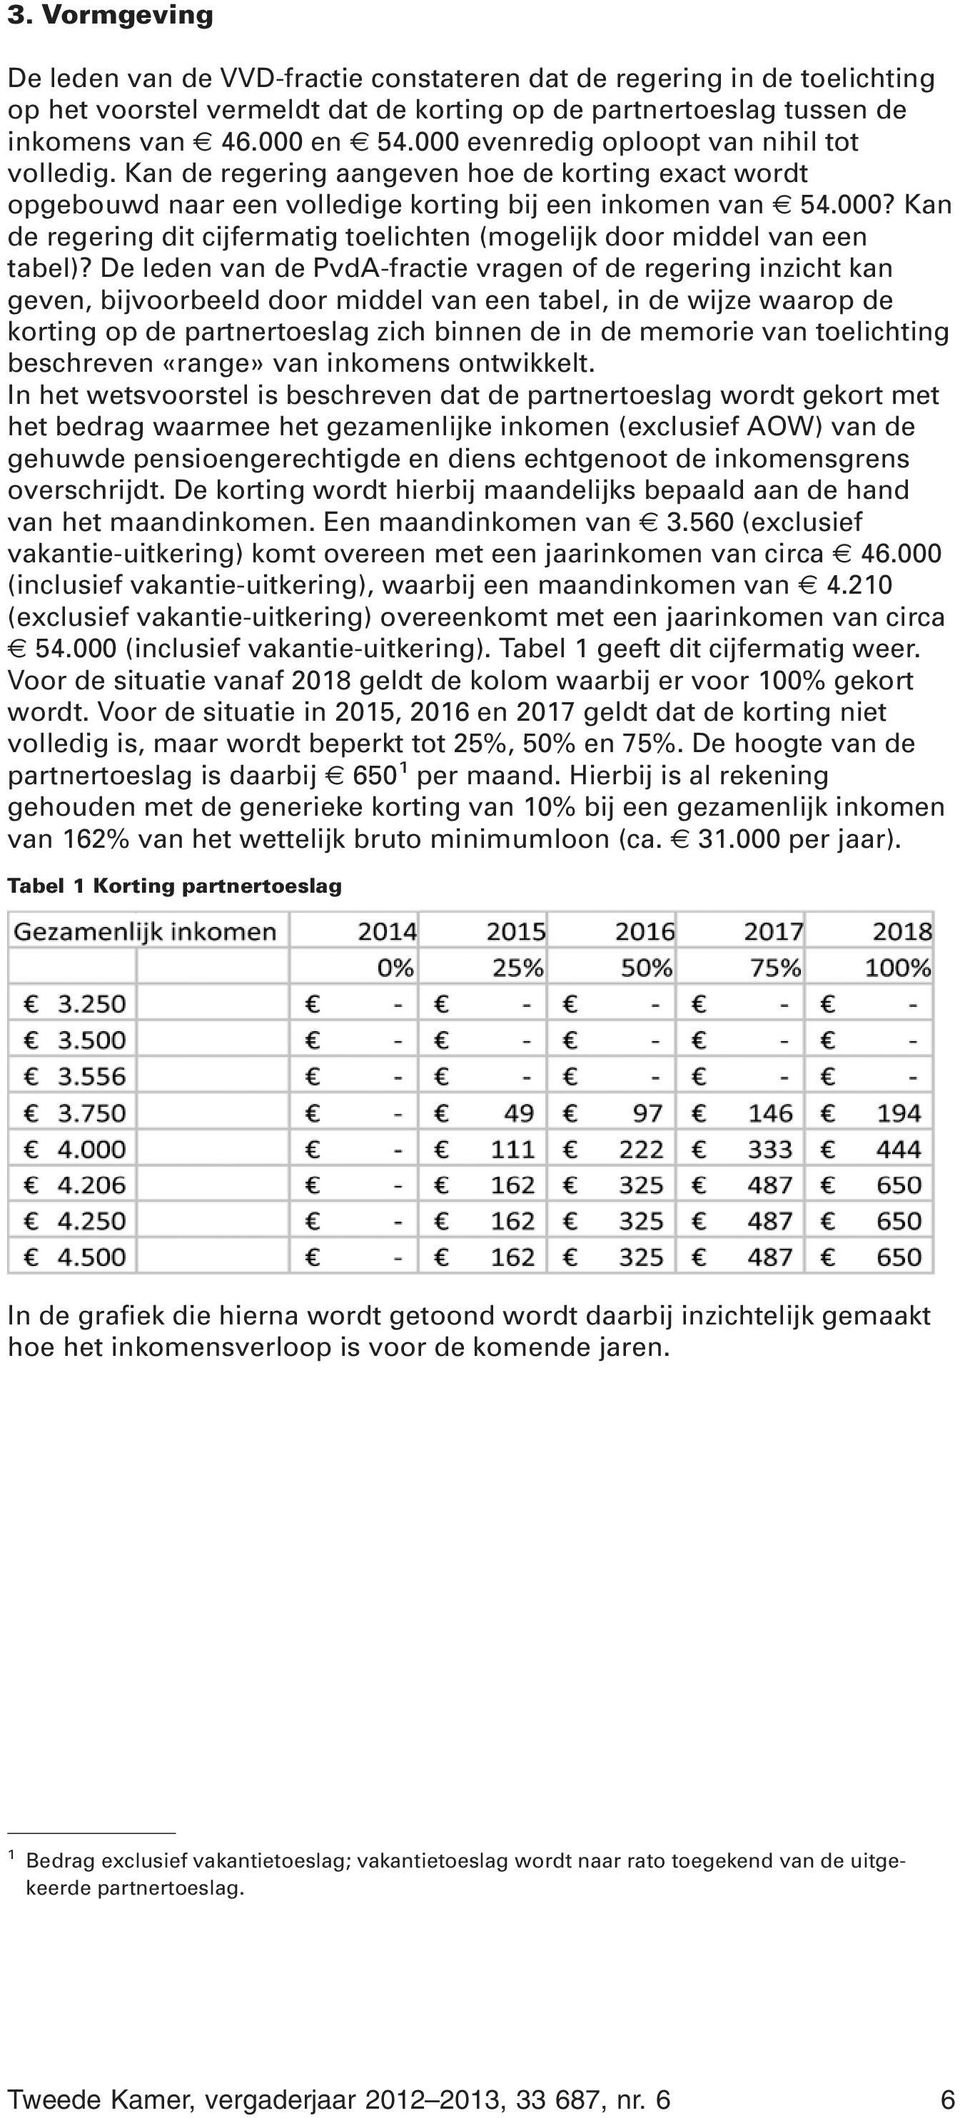 De leden van de PvdA-fractie vragen of de regering inzicht kan geven, bijvoorbeeld door middel van een tabel, in de wijze waarop de korting op de partnertoeslag zich binnen de in de memorie van